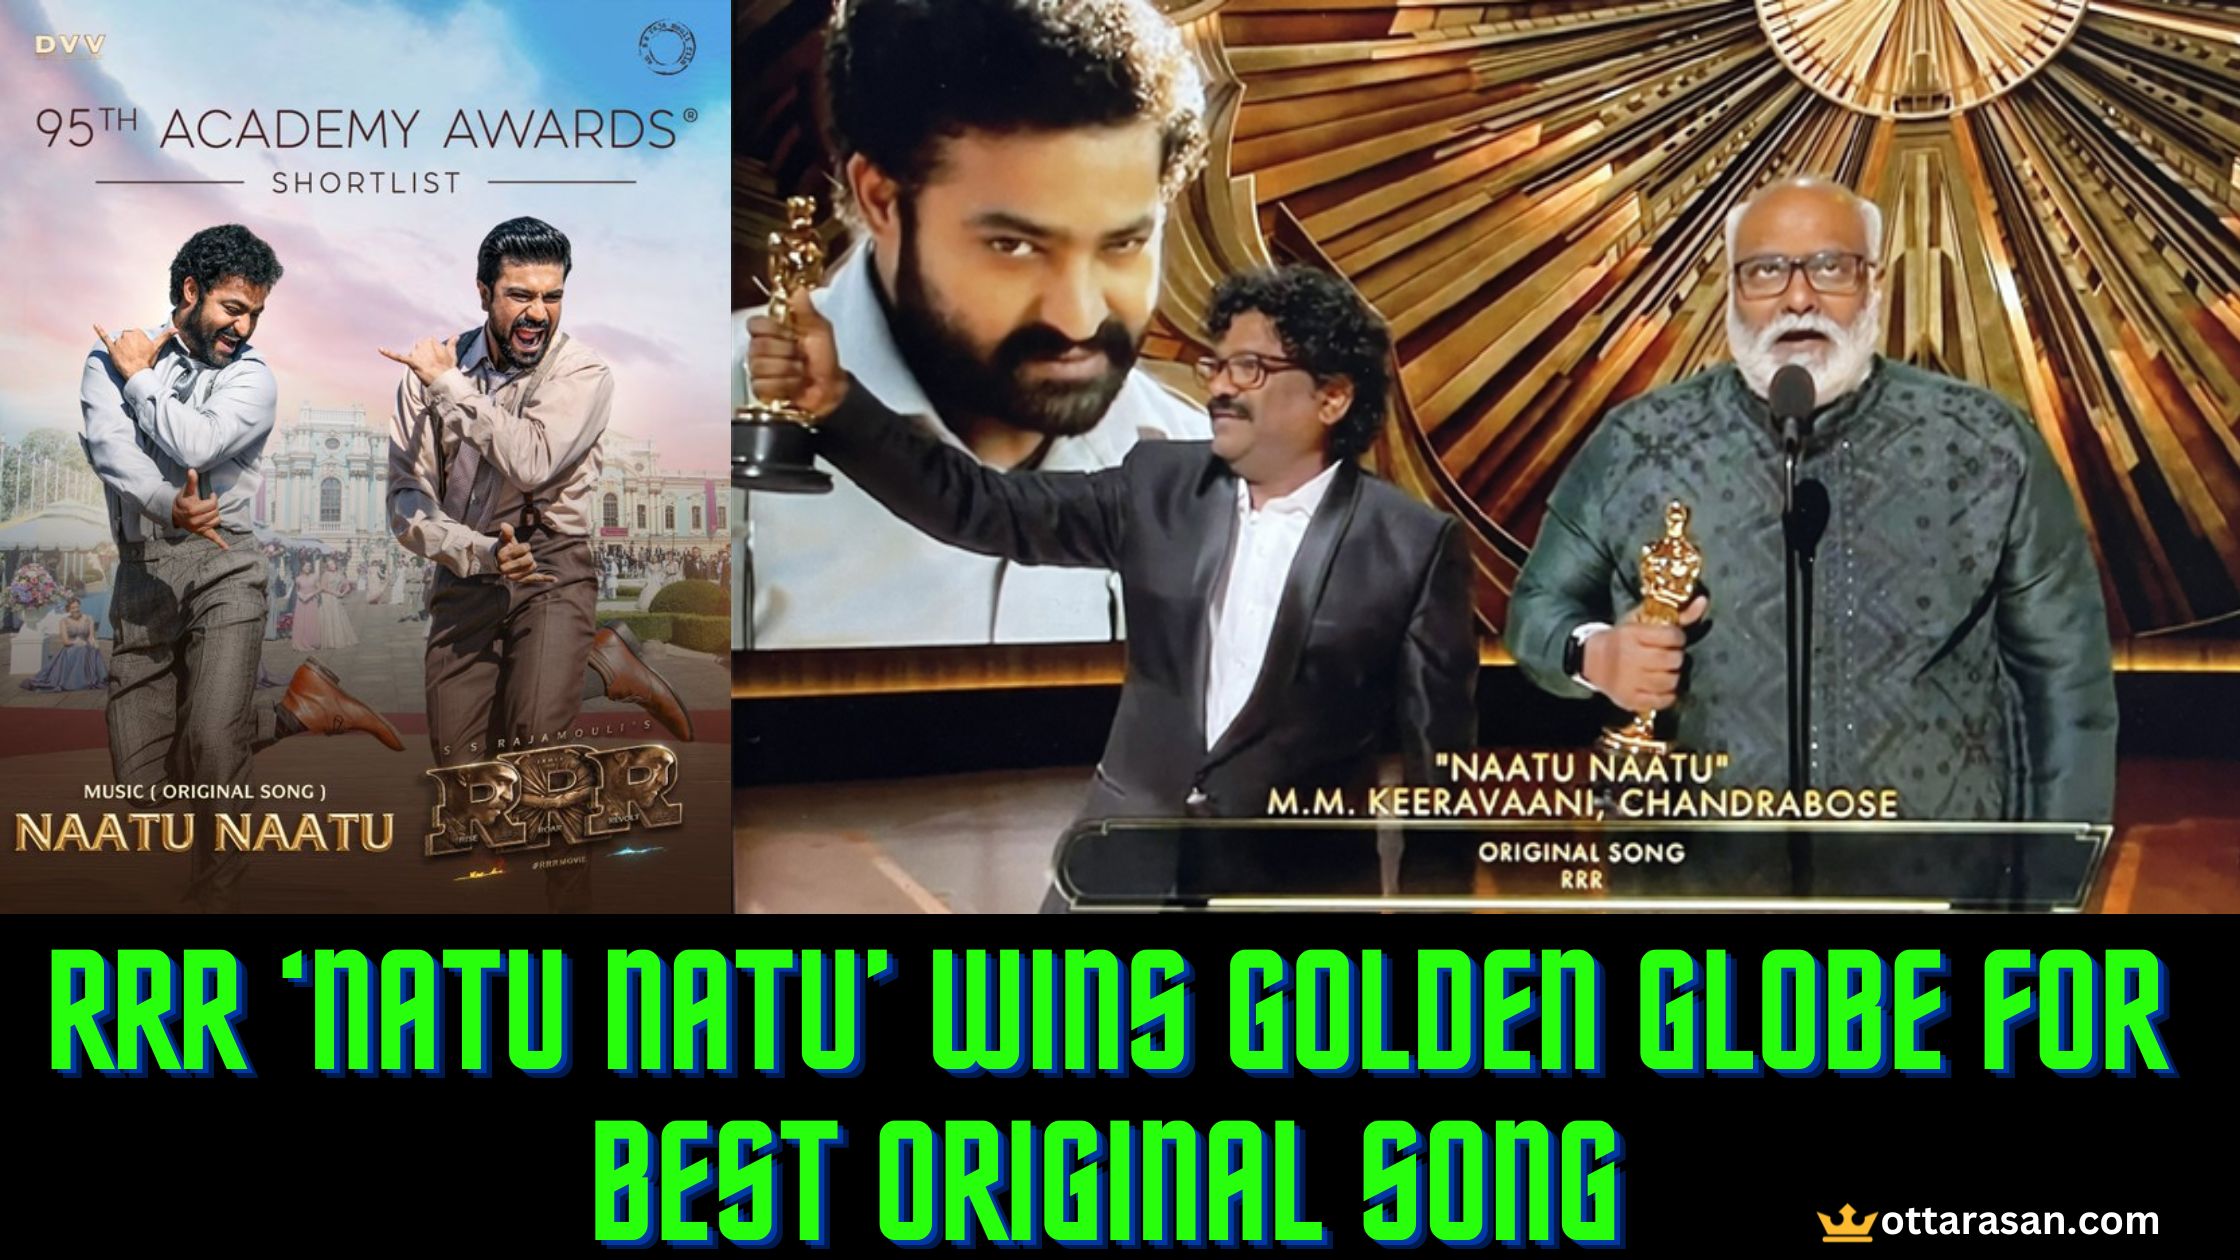 RRR Song ‘NATU NATU’ gets Best Original Song Award | Oscar Awards 2023